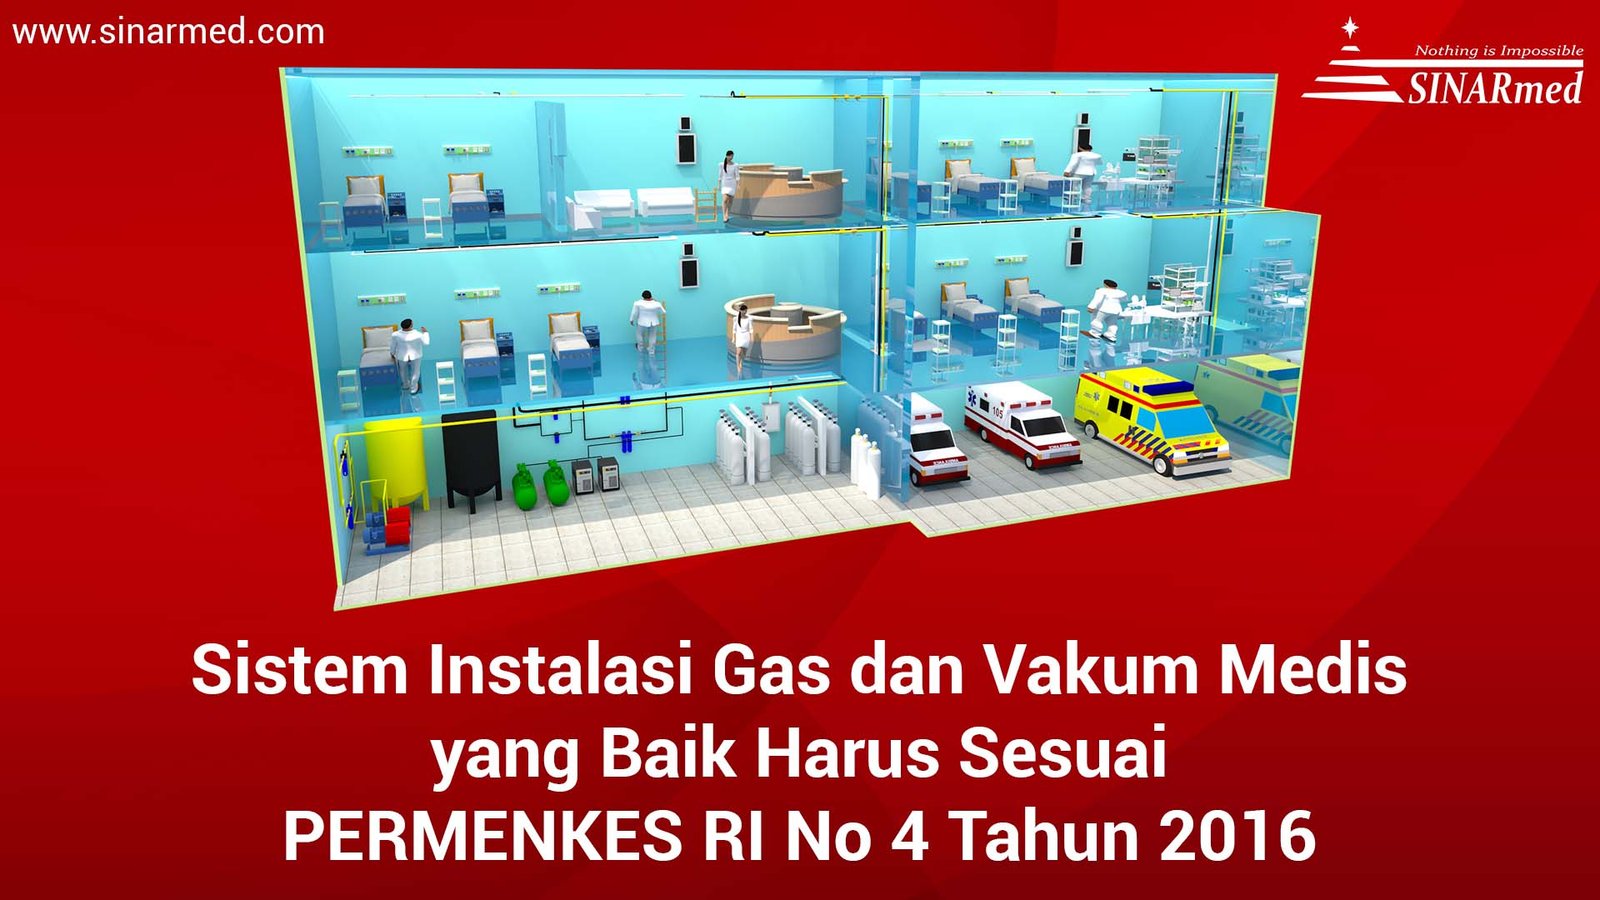 Instalasi Gas Medis sesuai PERMENKES RI No 4 Tahun 2016